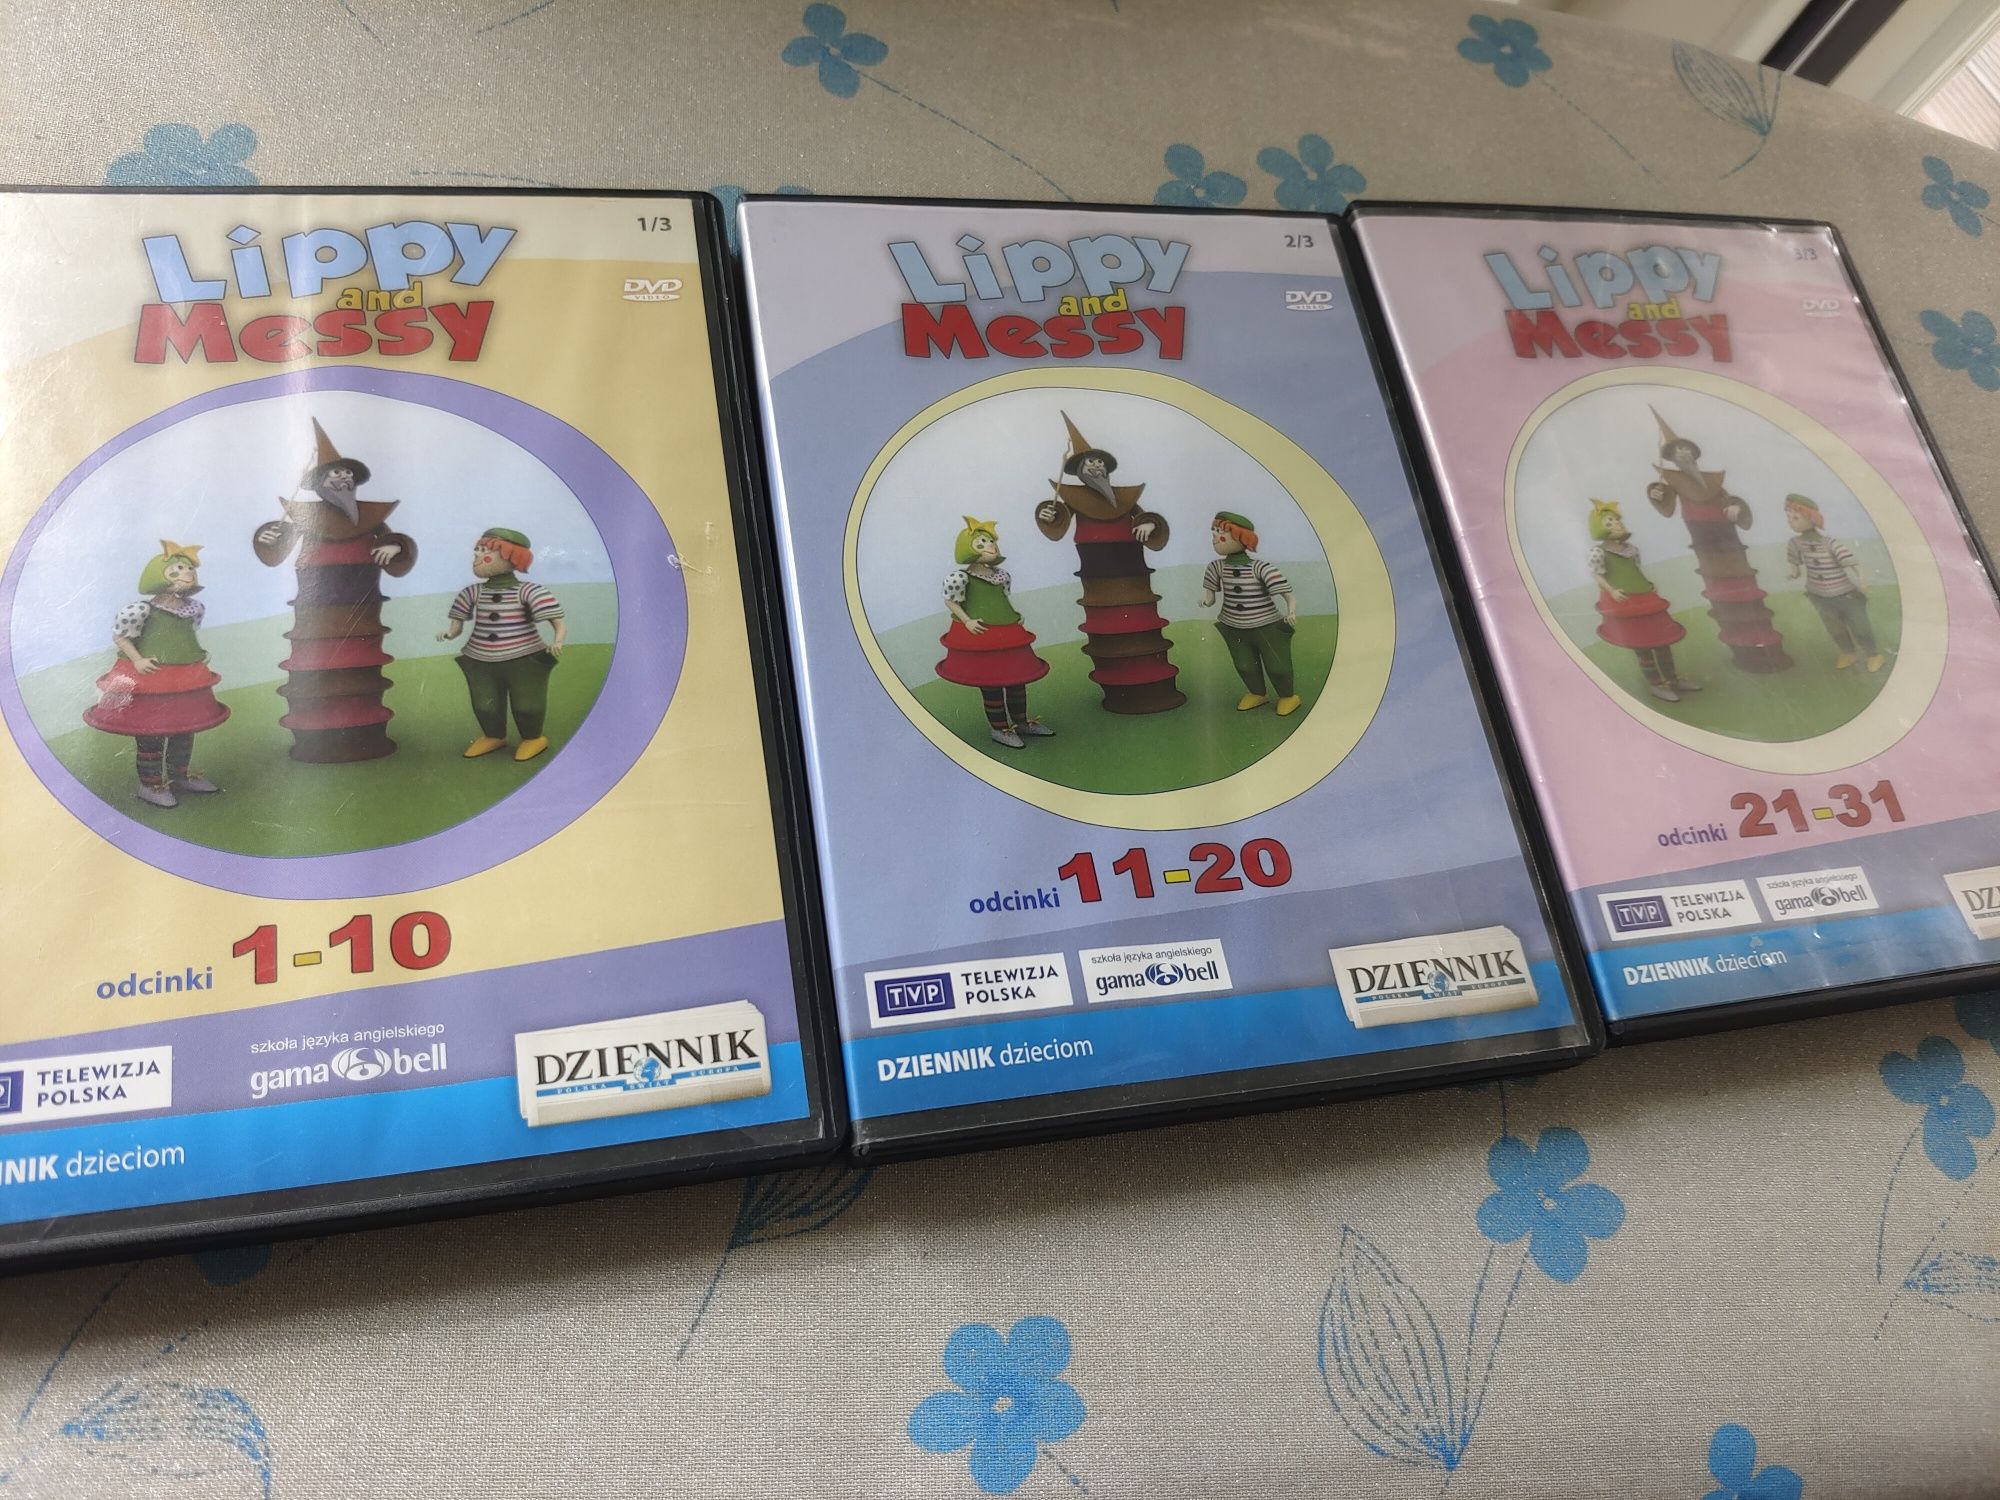 Komplet DVD do nauki angielskiego 3 płyty Lippy and Messy